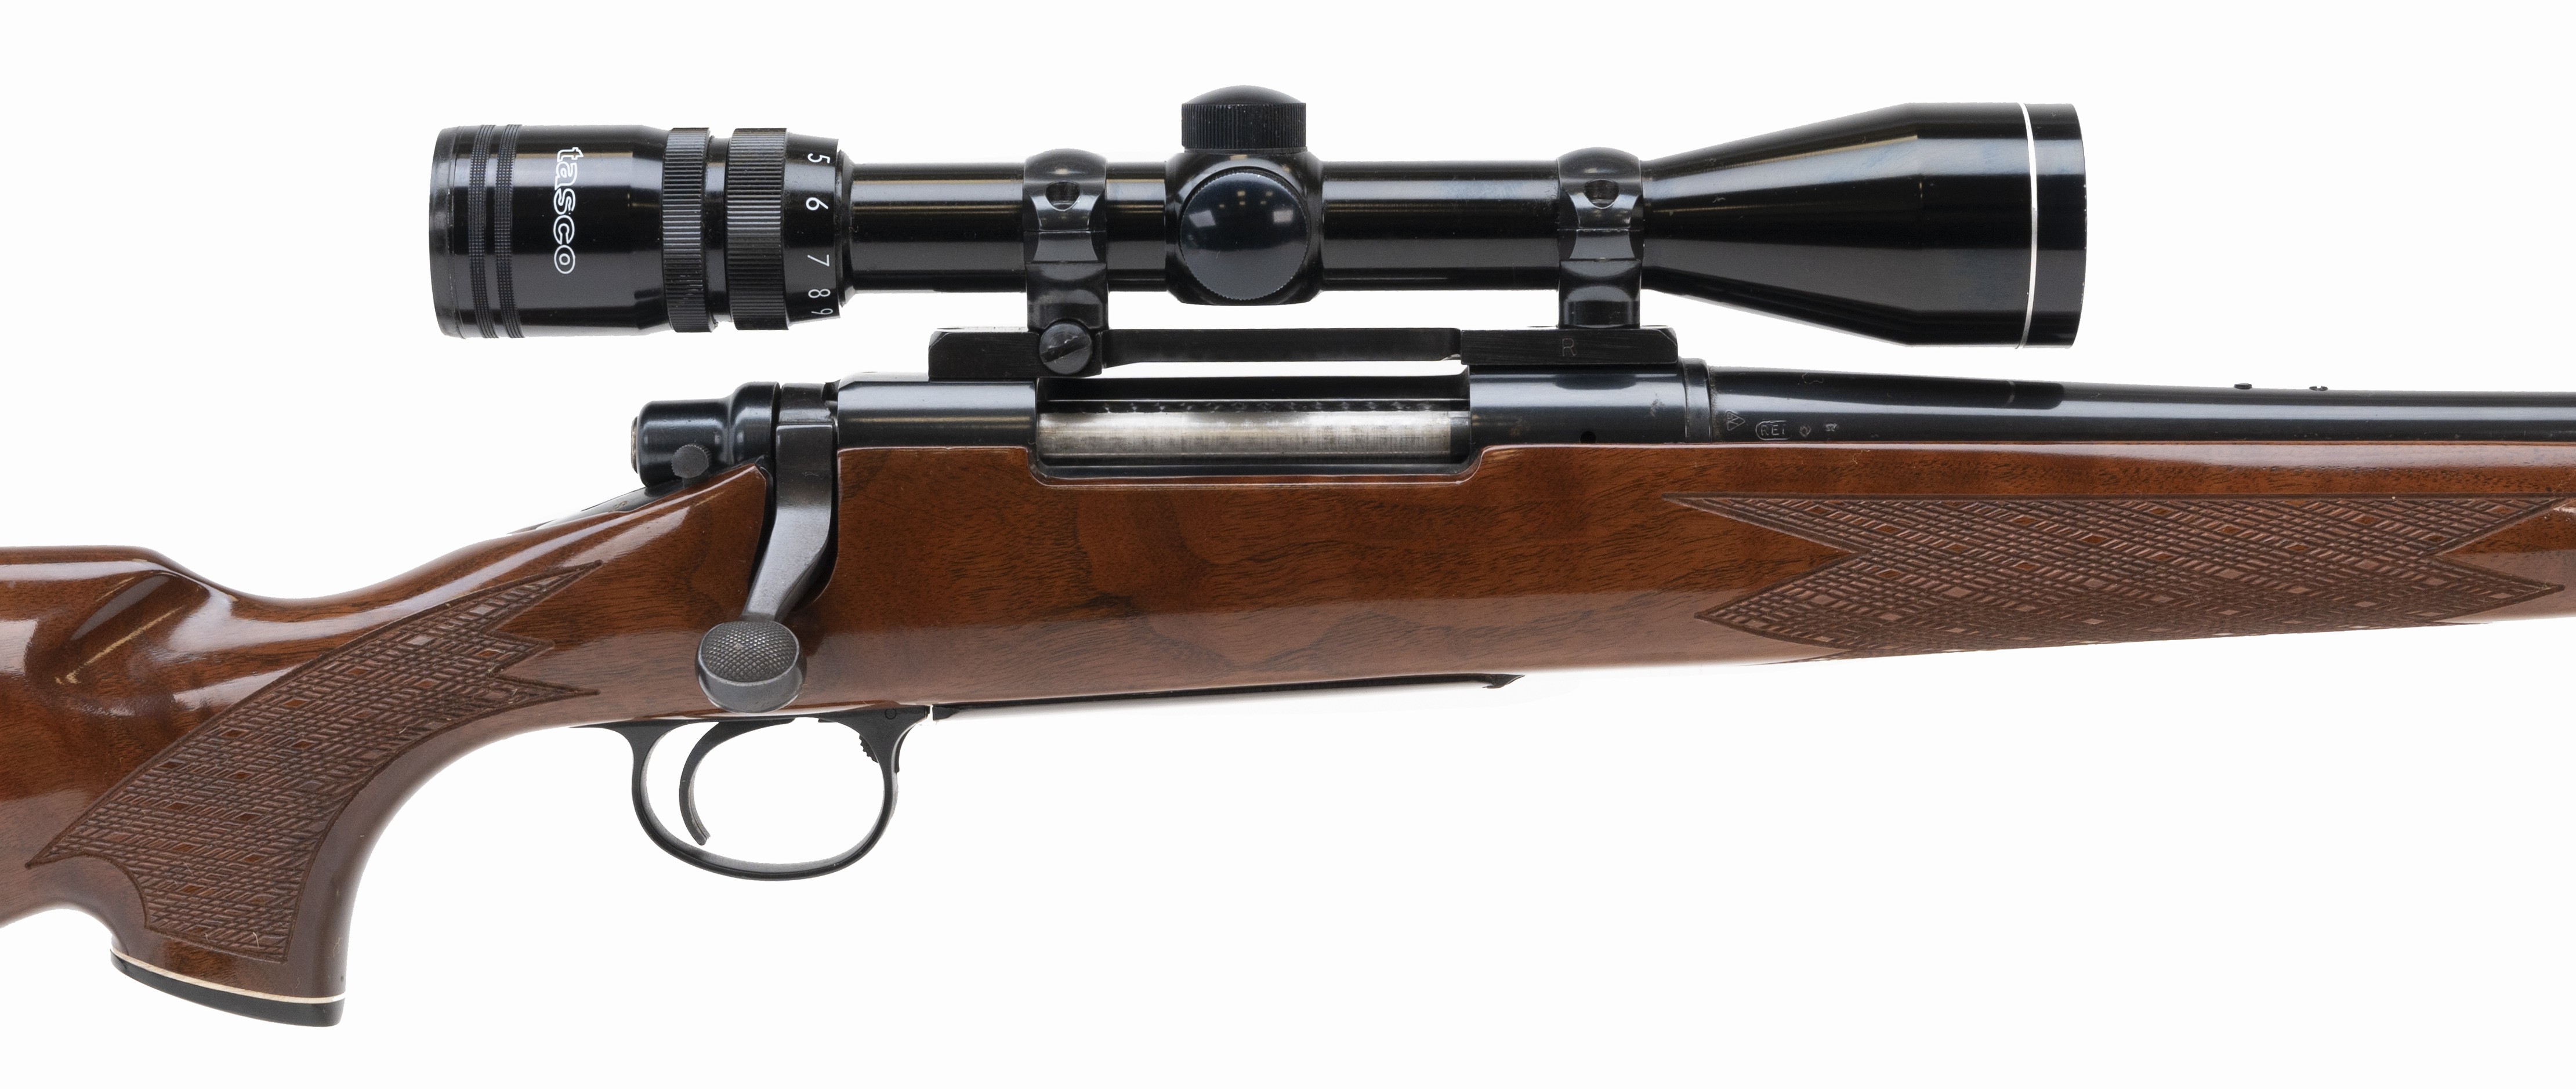 Remington 700 Bdl 30 06 Rifle Ct Firearms Auction - Bank2home.com